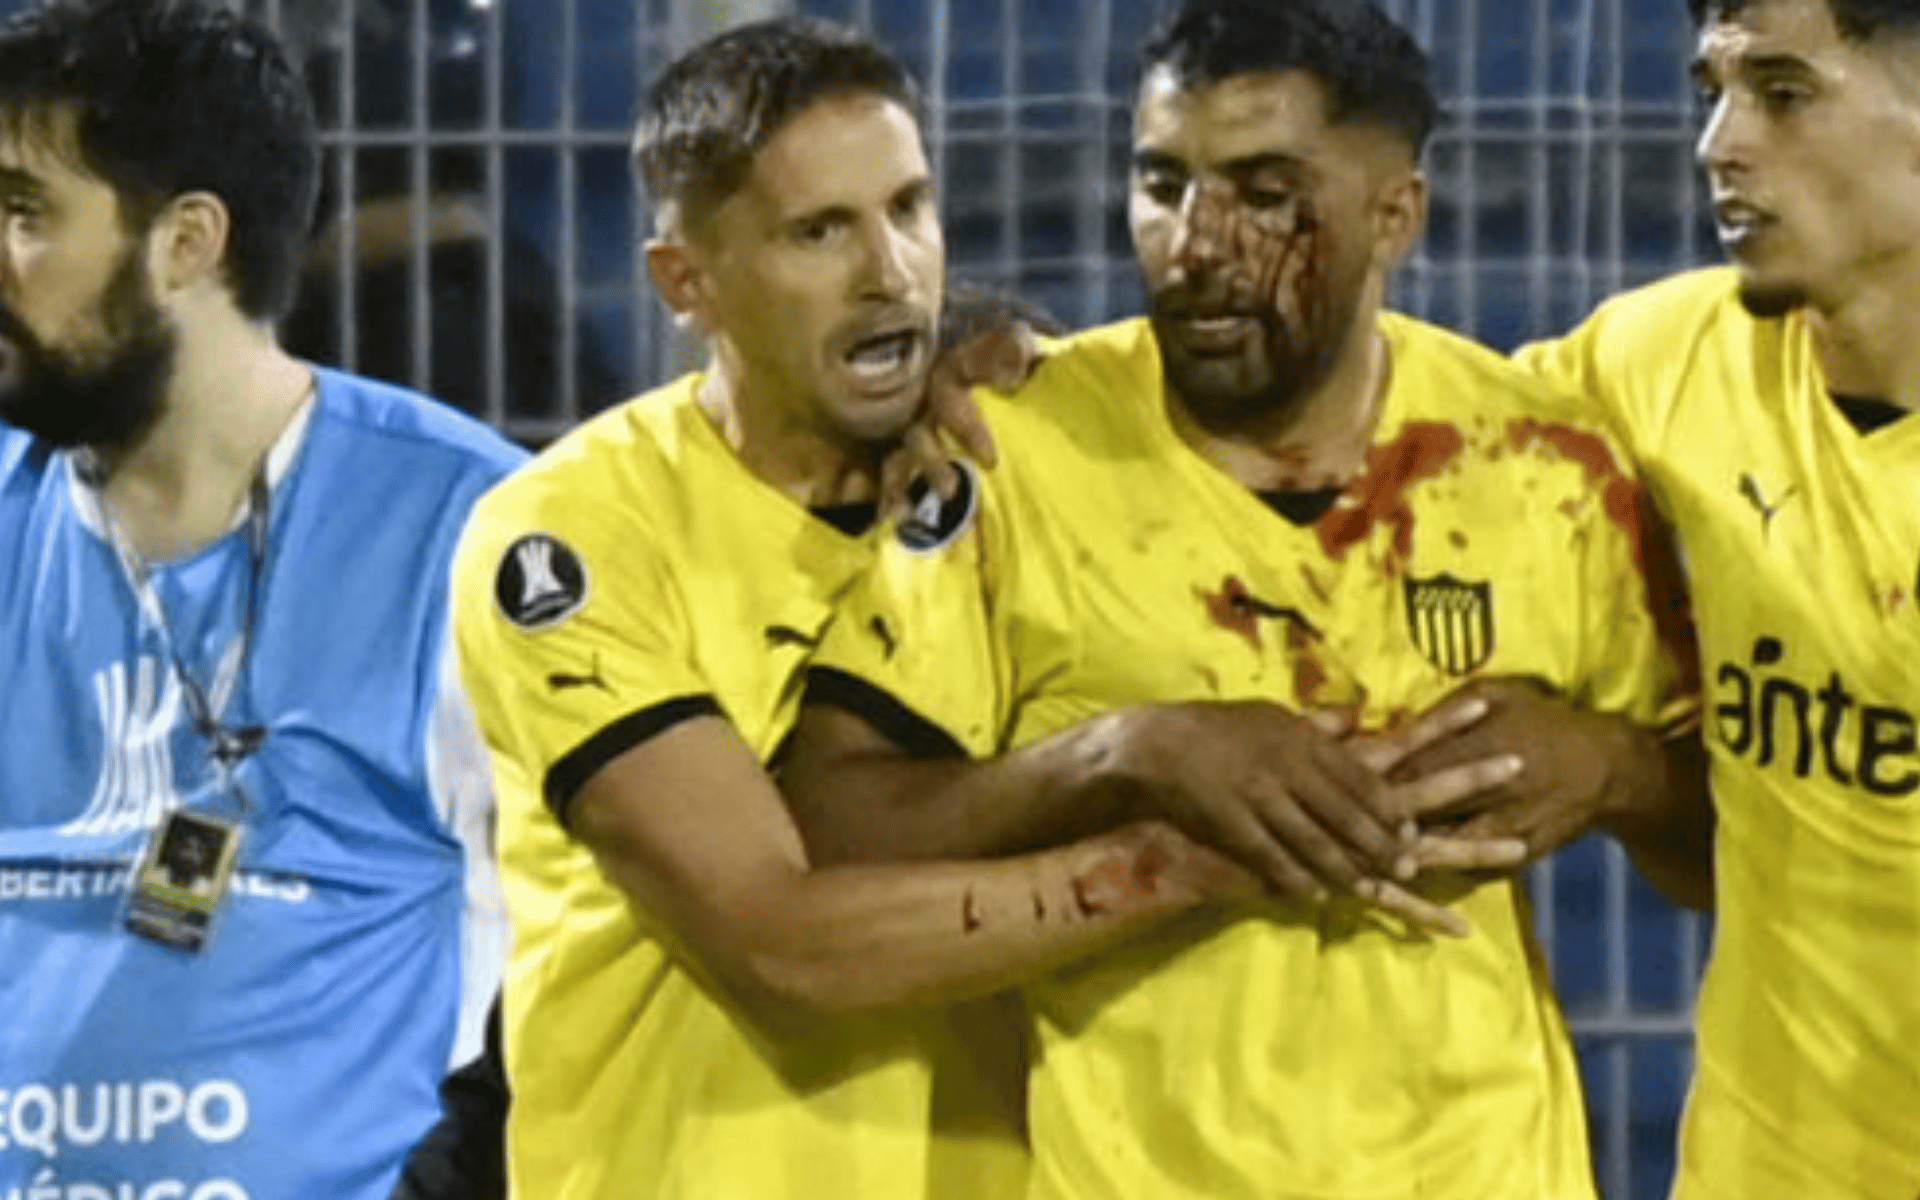 _Peñarol Lesionado por Agressão